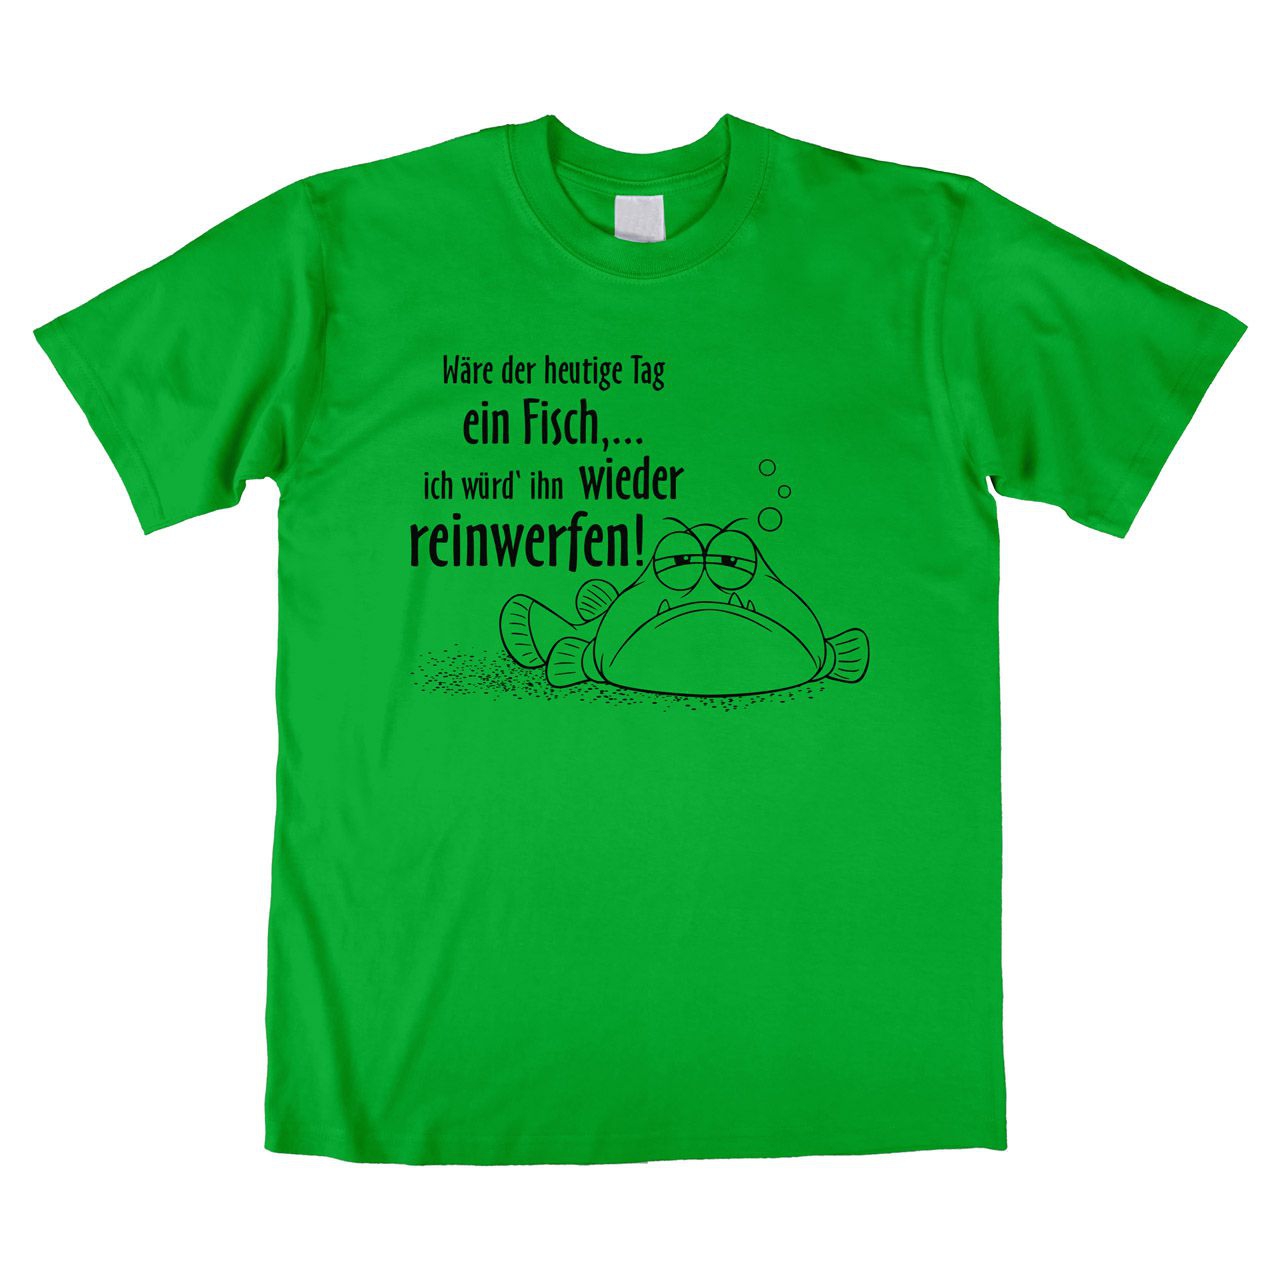 Wäre der heutige Tag ein Fisch Unisex T-Shirt grün Medium